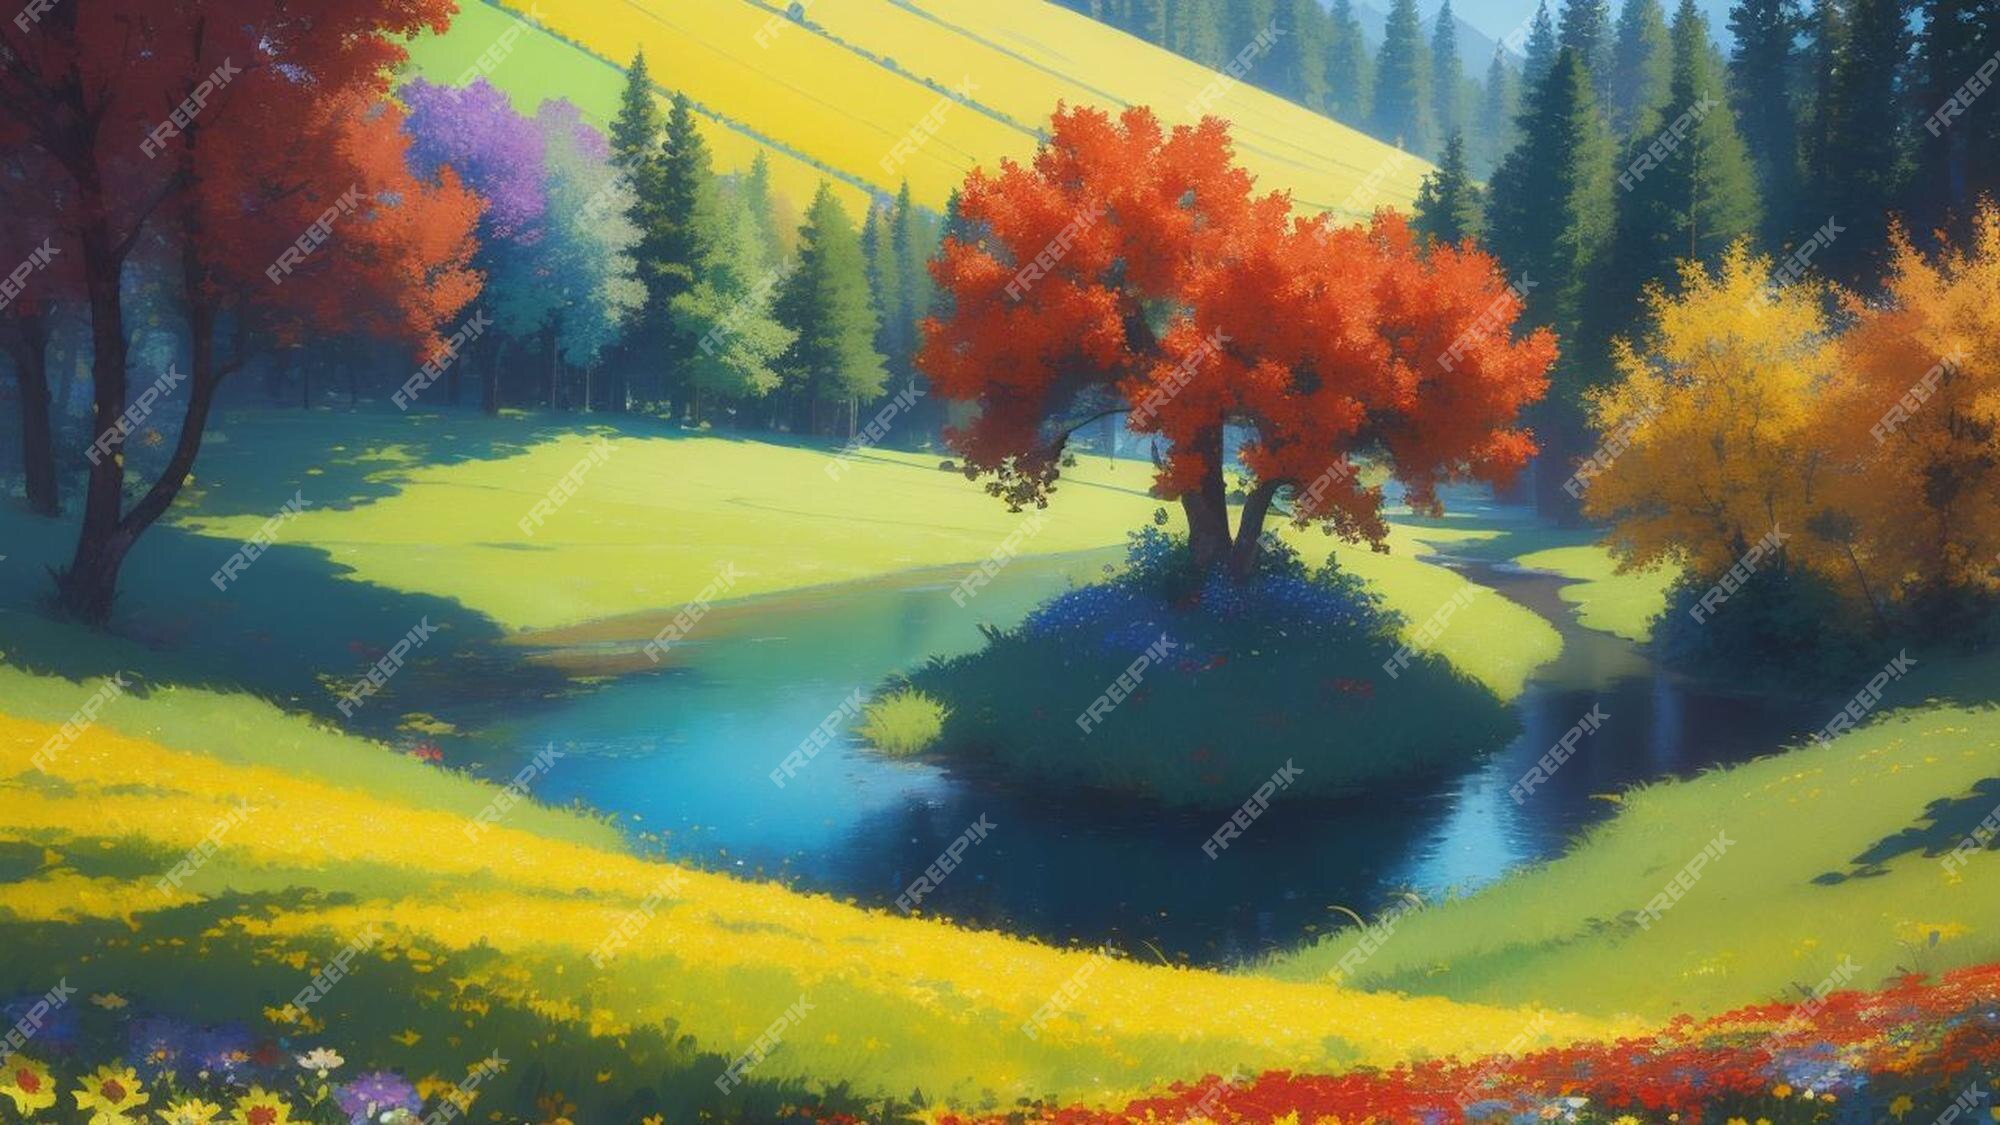 Cenário de floresta de anime [1920x1080] Precisa de anime de